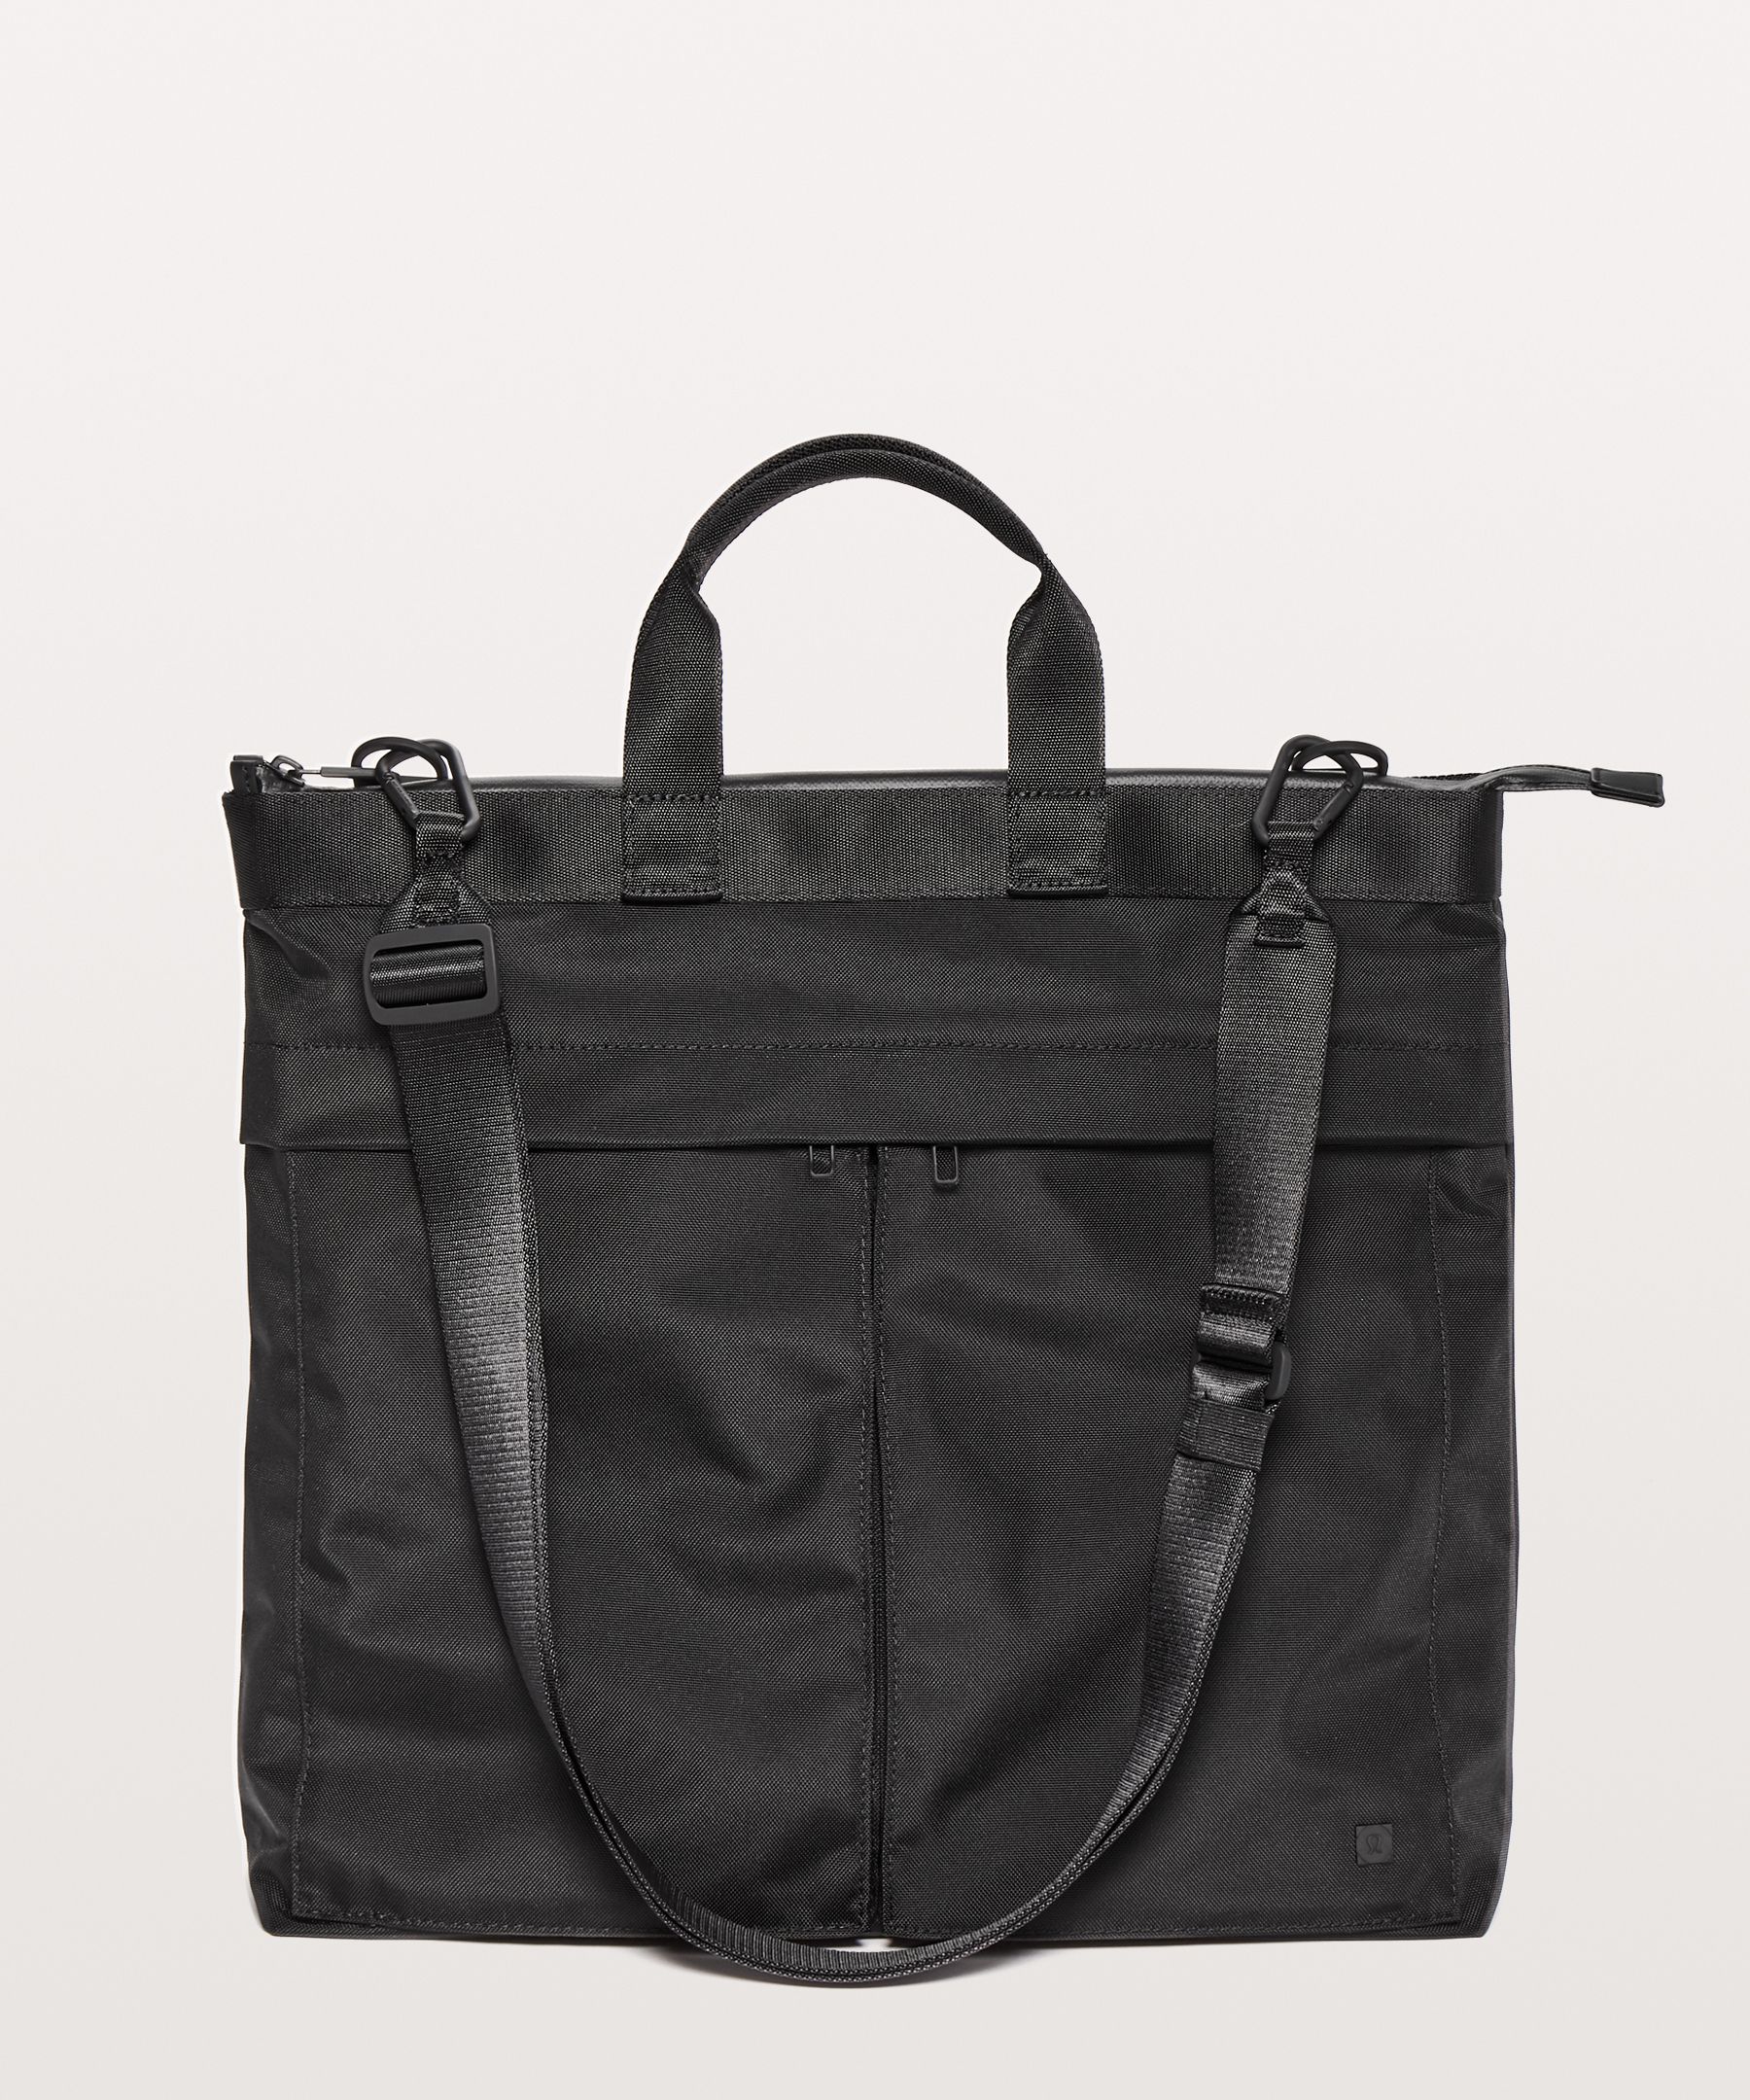 Lululemon Commission Bag In Black | ModeSens